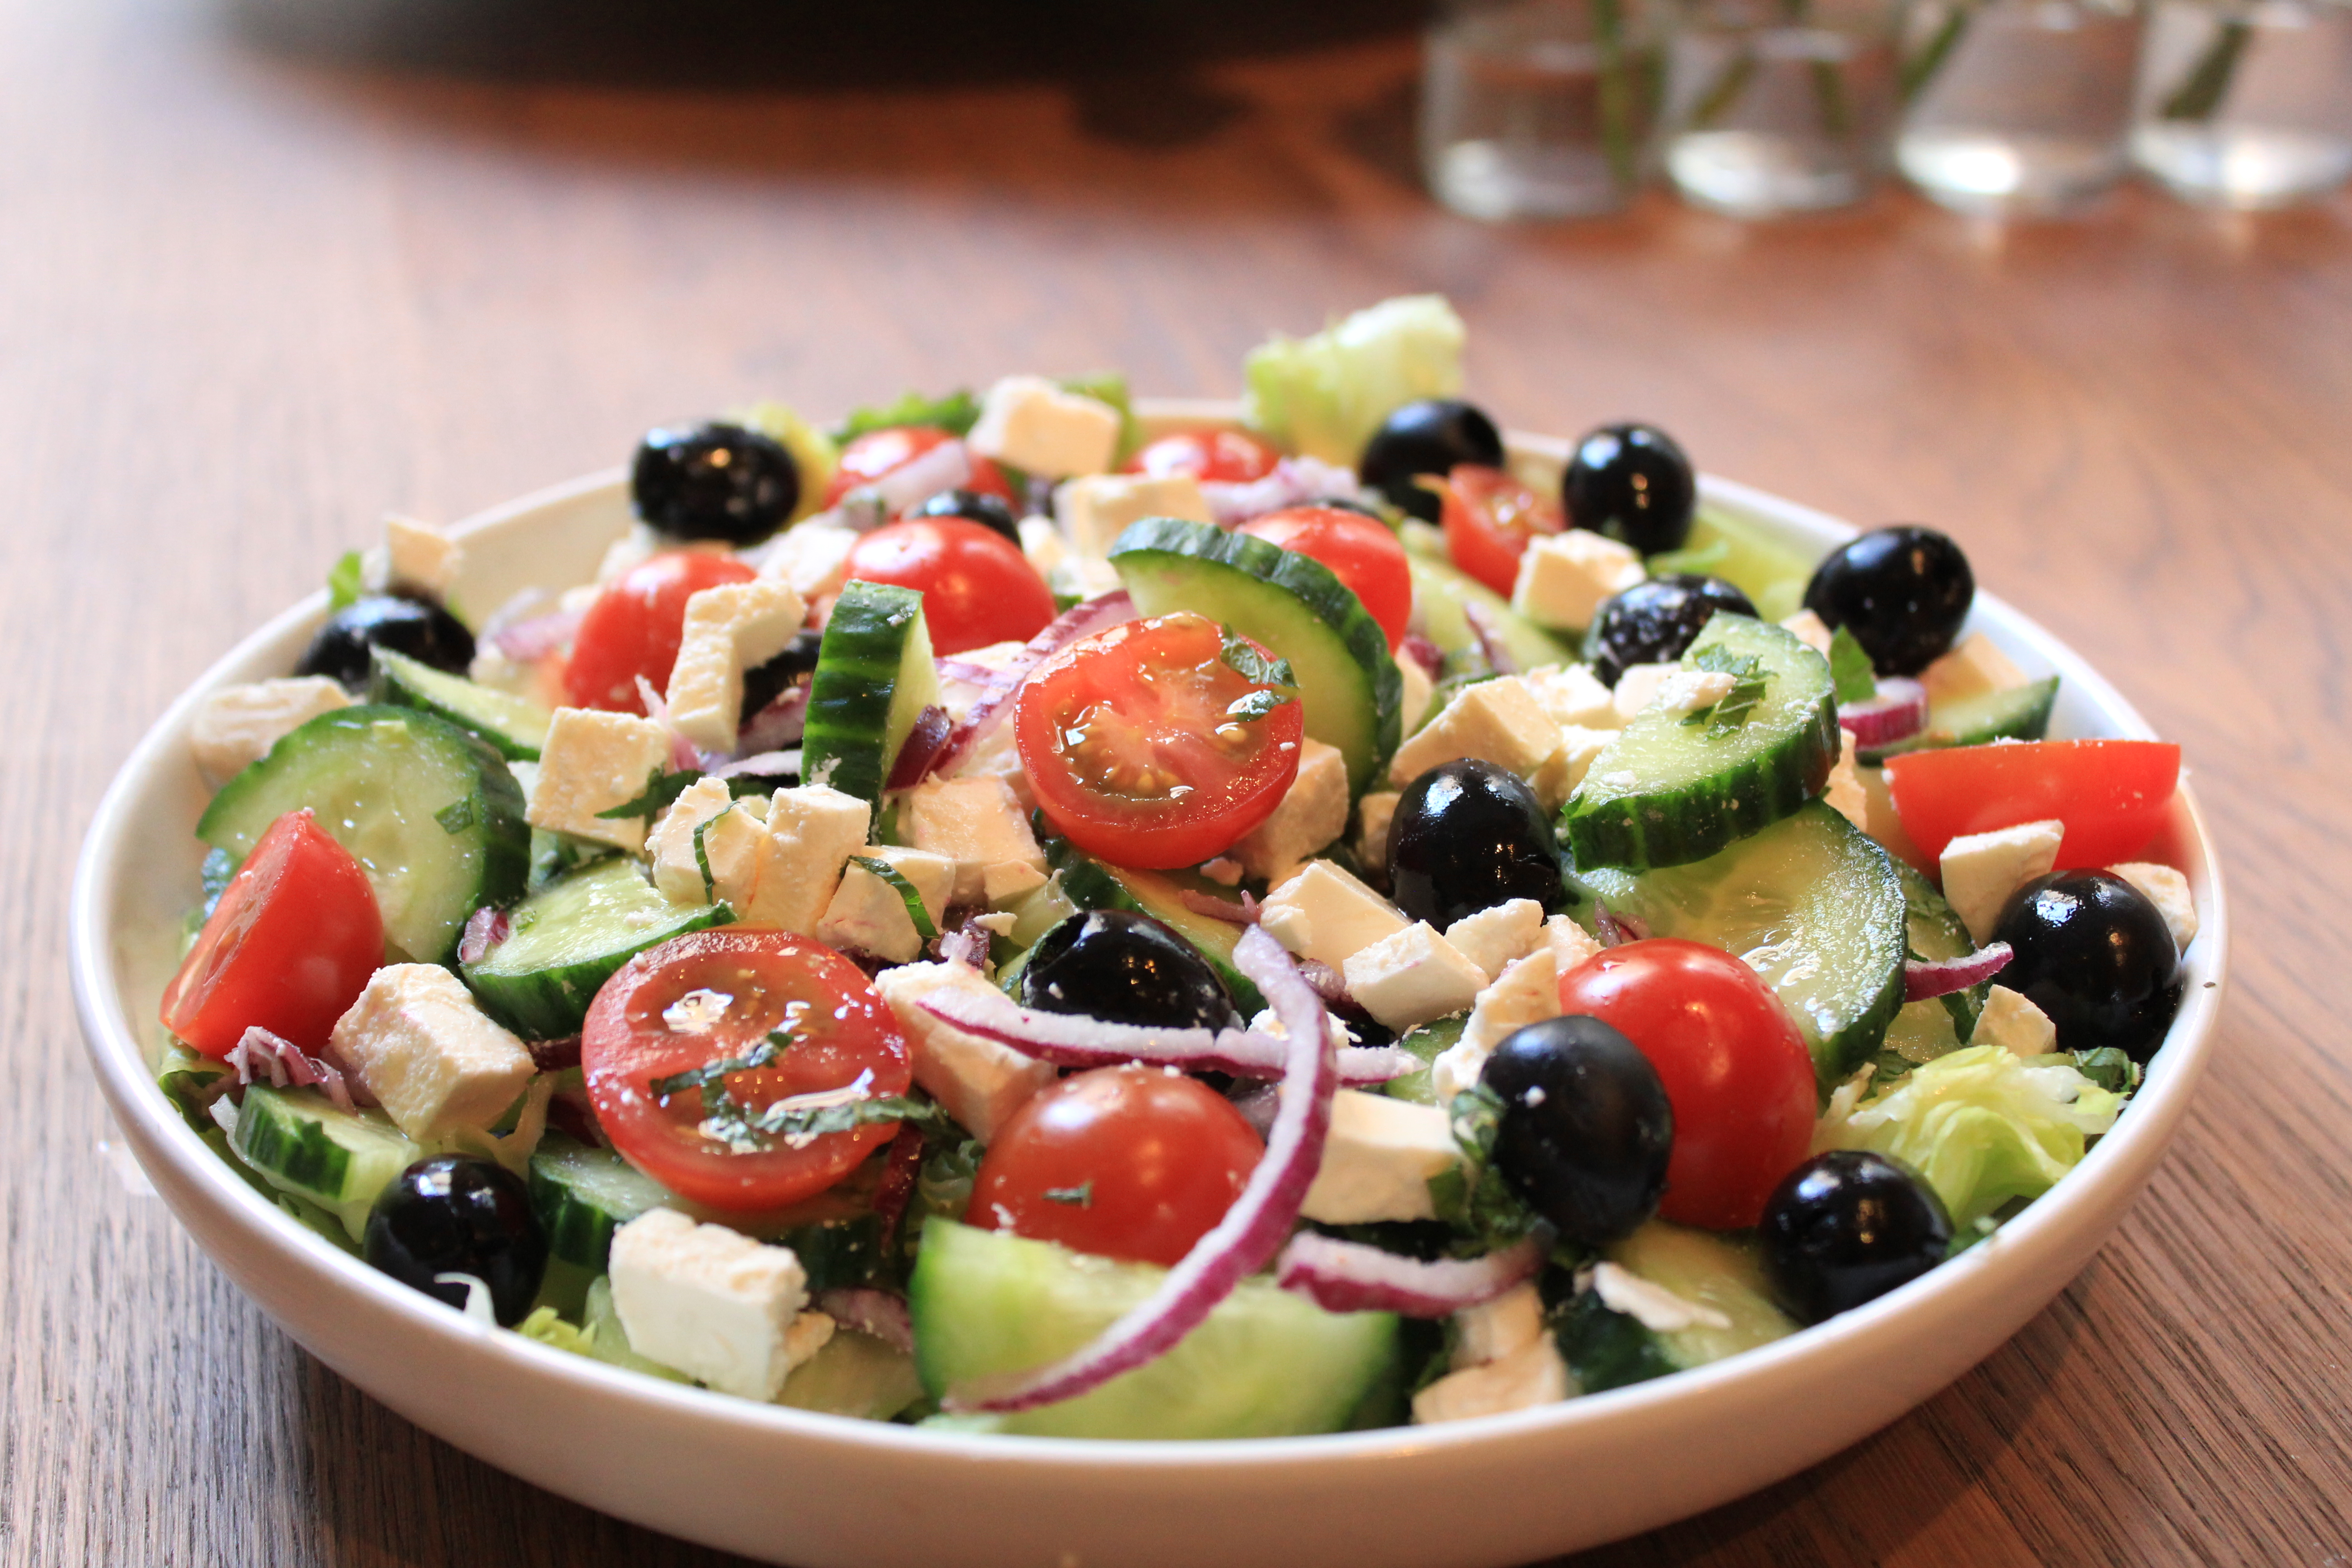 Salada grega é um dos pratos que serão ensinados no curso do Sesi (Foto: Reprodução)